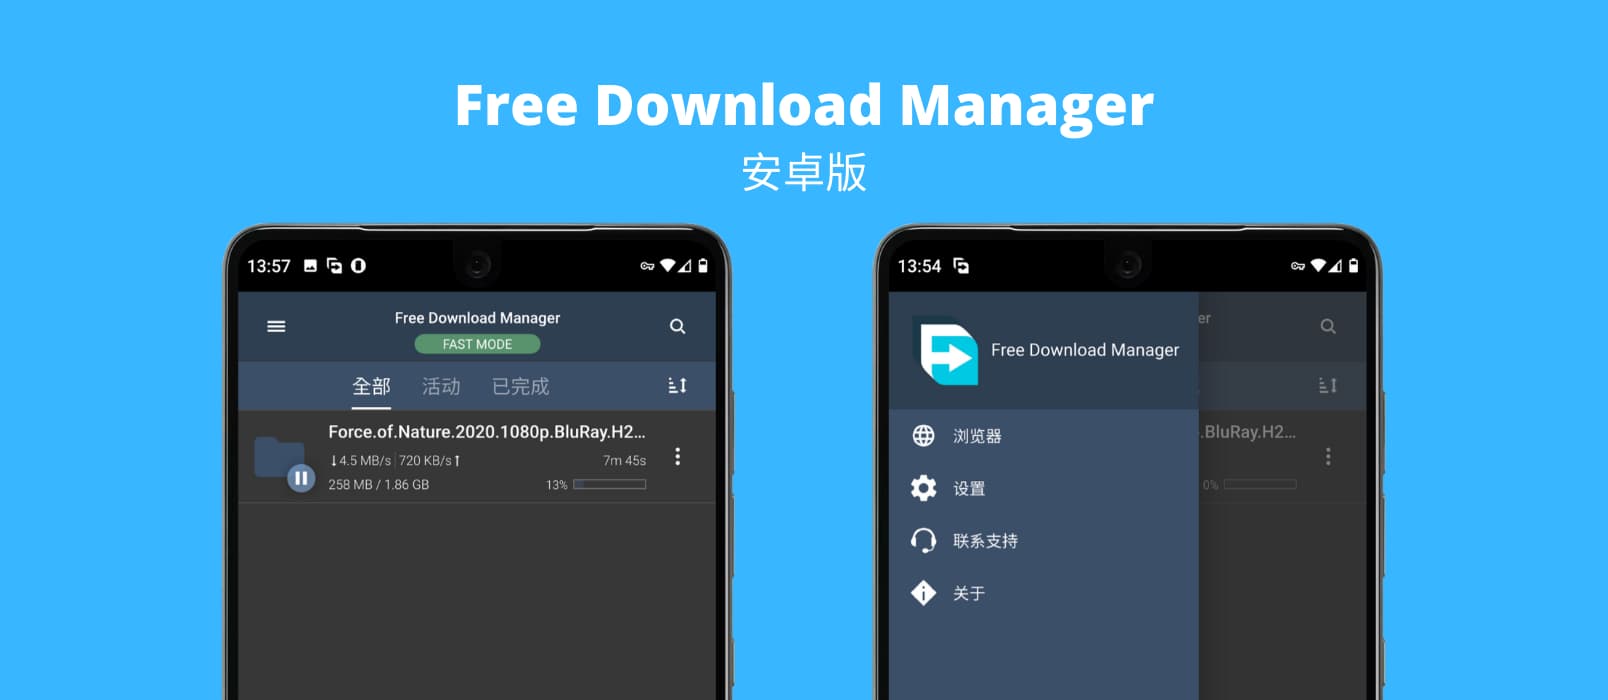 支持 BT 下载的 Free Download Manager 安卓版 1